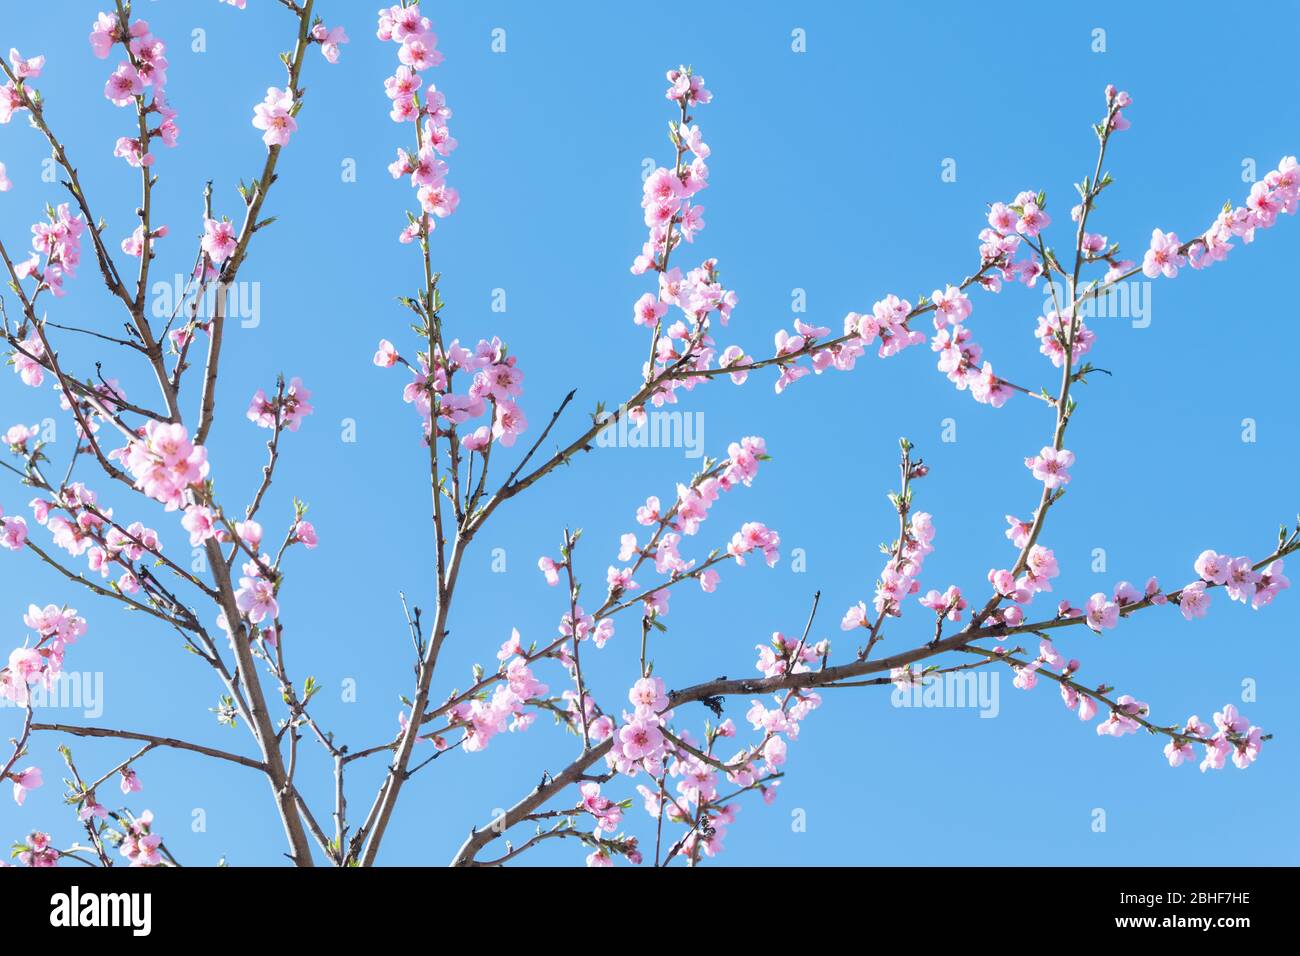 Fleurs de pêche roses sur les brindilles sur fond bleu ciel sur la fermeture de printemps. Photographie de la nature Banque D'Images